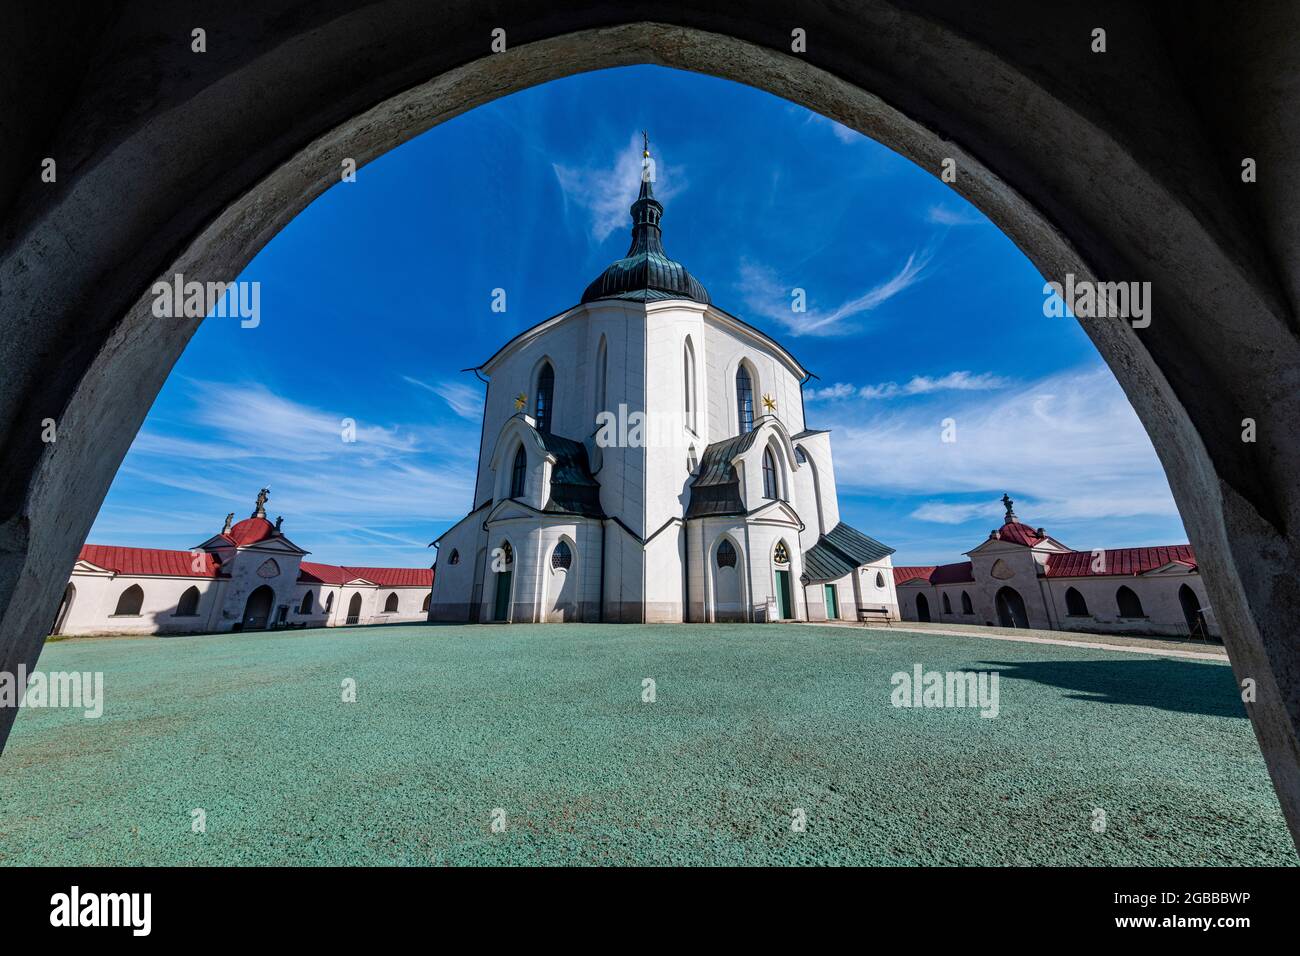 Église de pèlerinage de Saint-Jean de Nepomuk, site du patrimoine mondial de l'UNESCO, Zelena Hora, République tchèque, Europe Banque D'Images